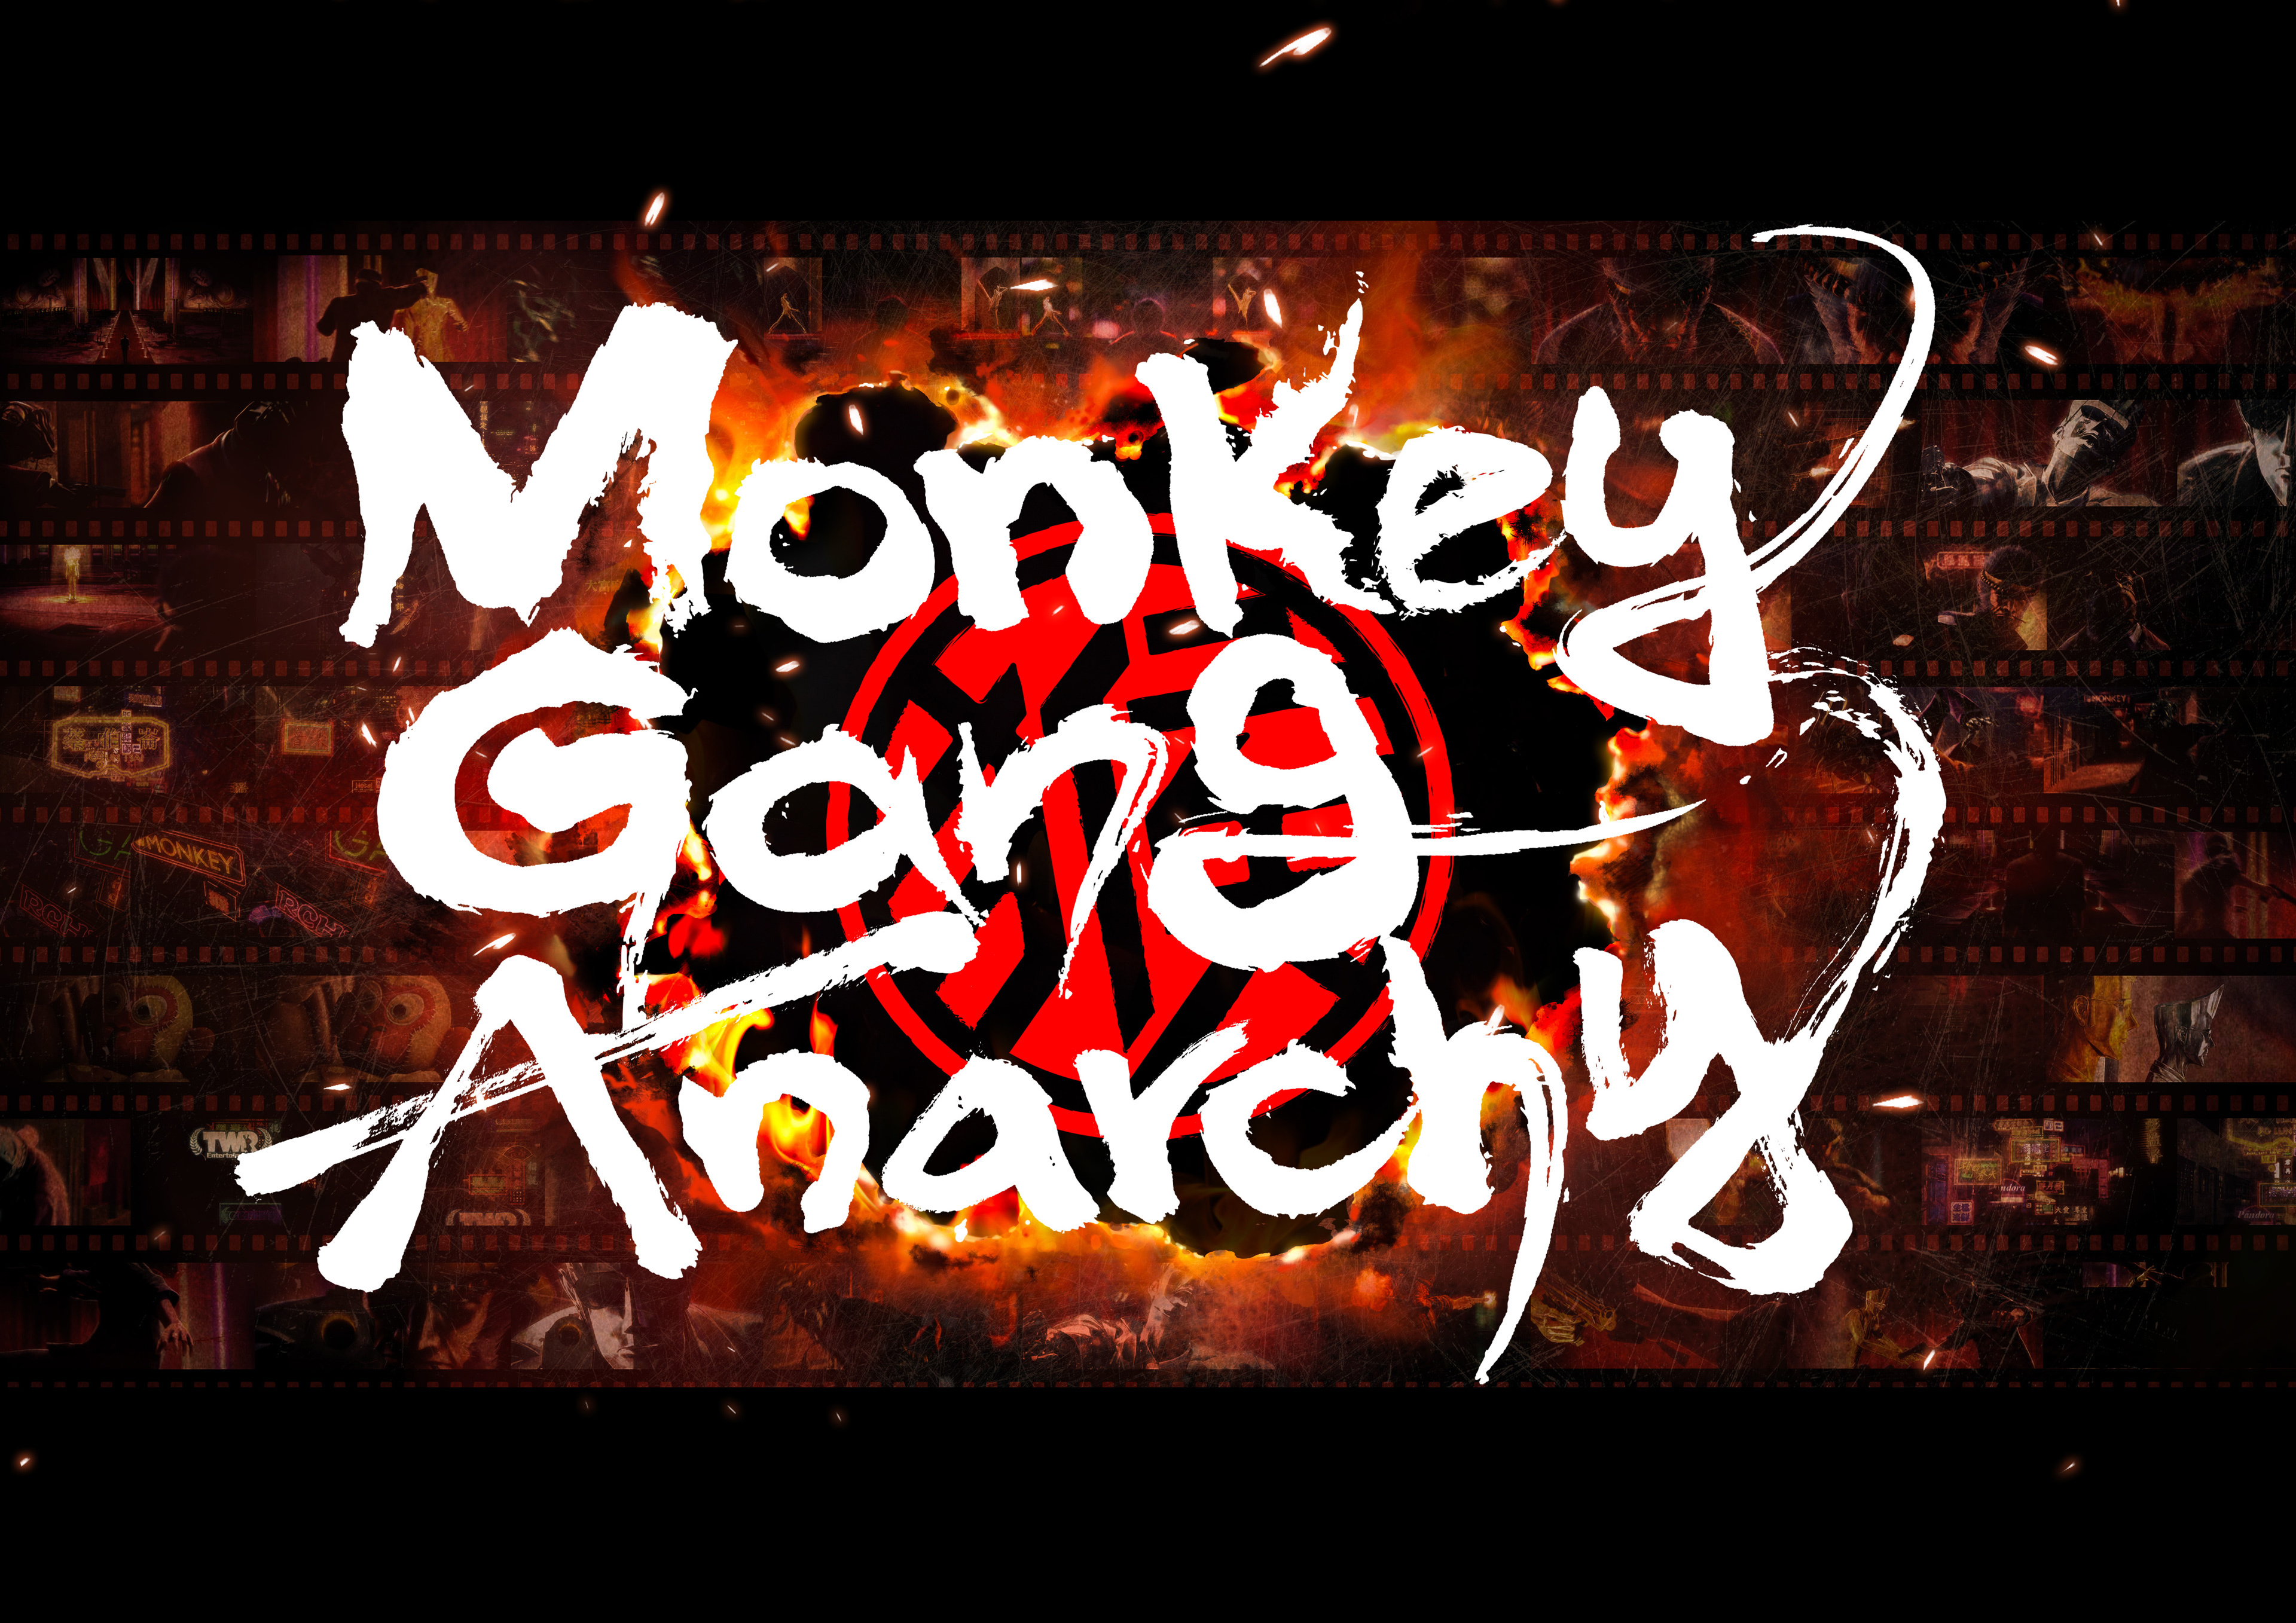 CGアニメ制作の5(ファイブ)、オリジナルIP
『Monkey Gang Anarchy』を制作しPV映像を発表！